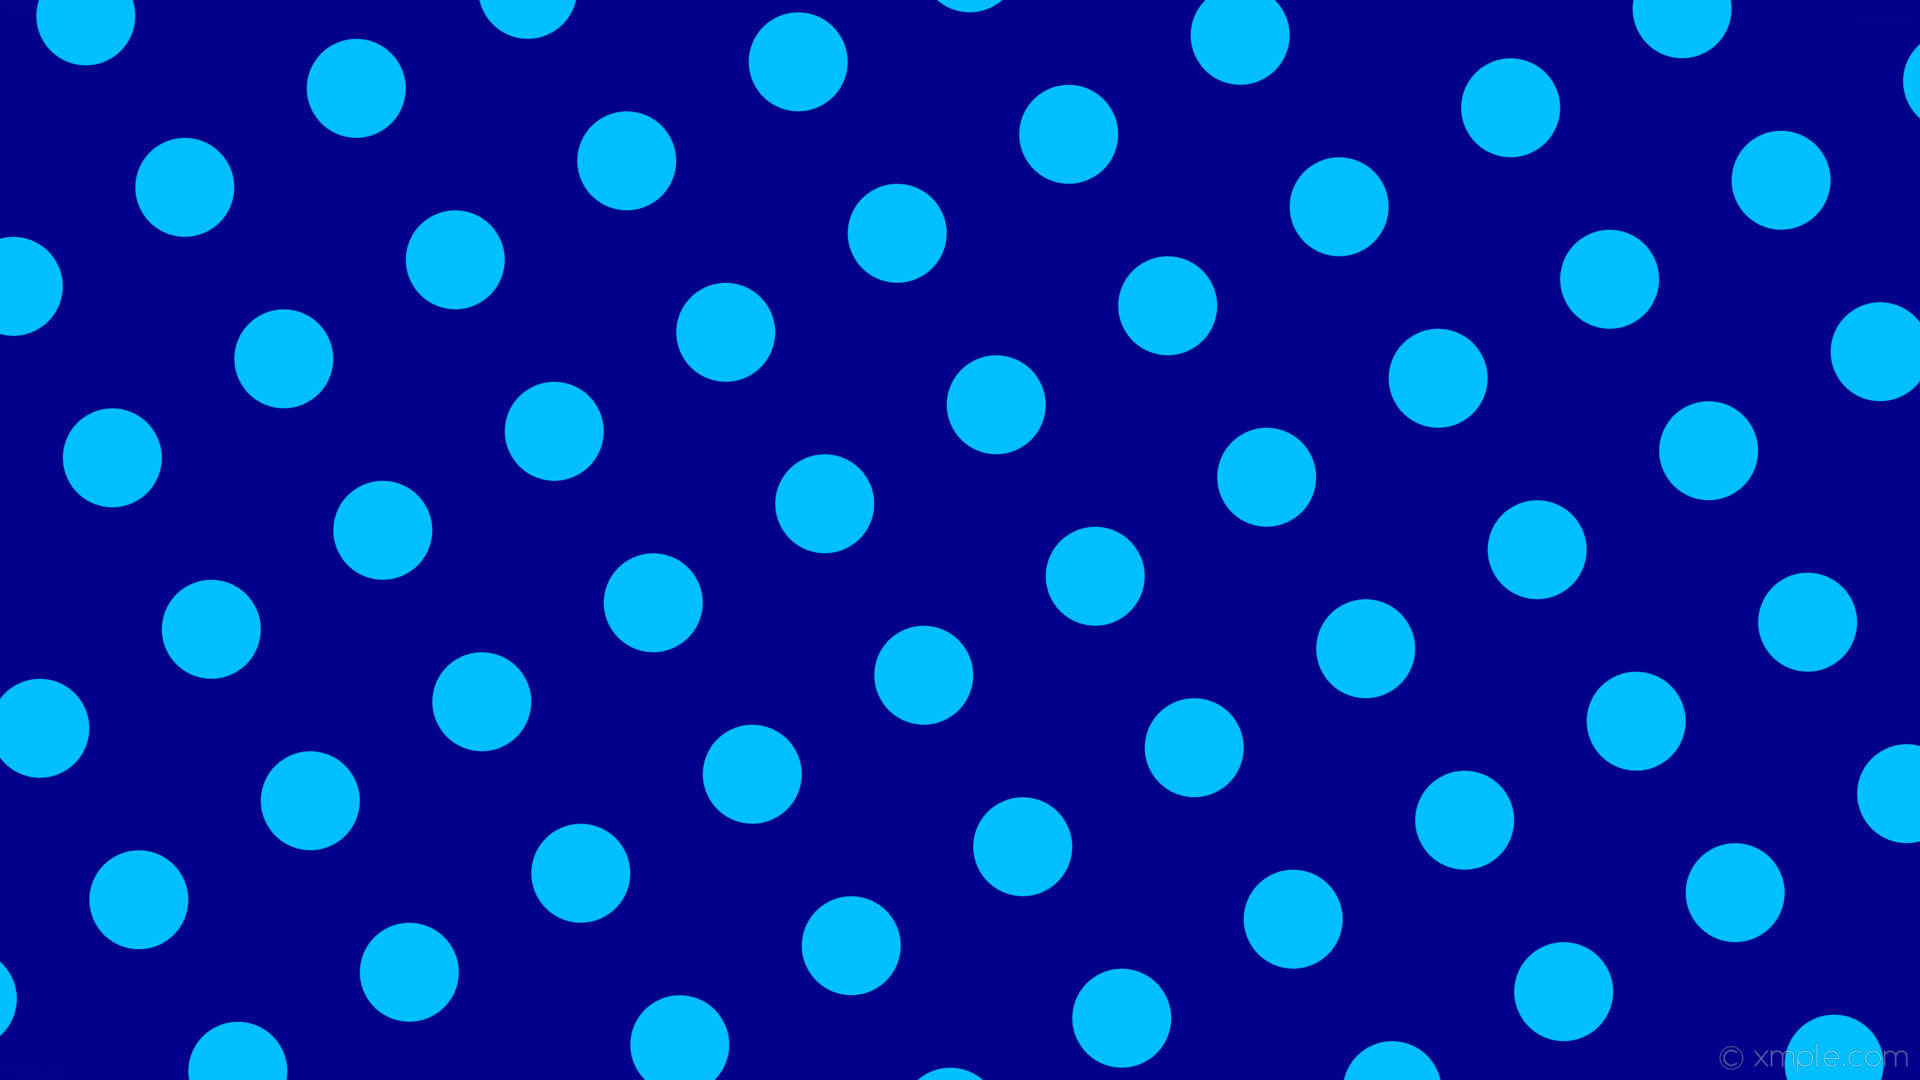 Wallpaper spots blue polka dots dark blue deep sky blue b bfff 120